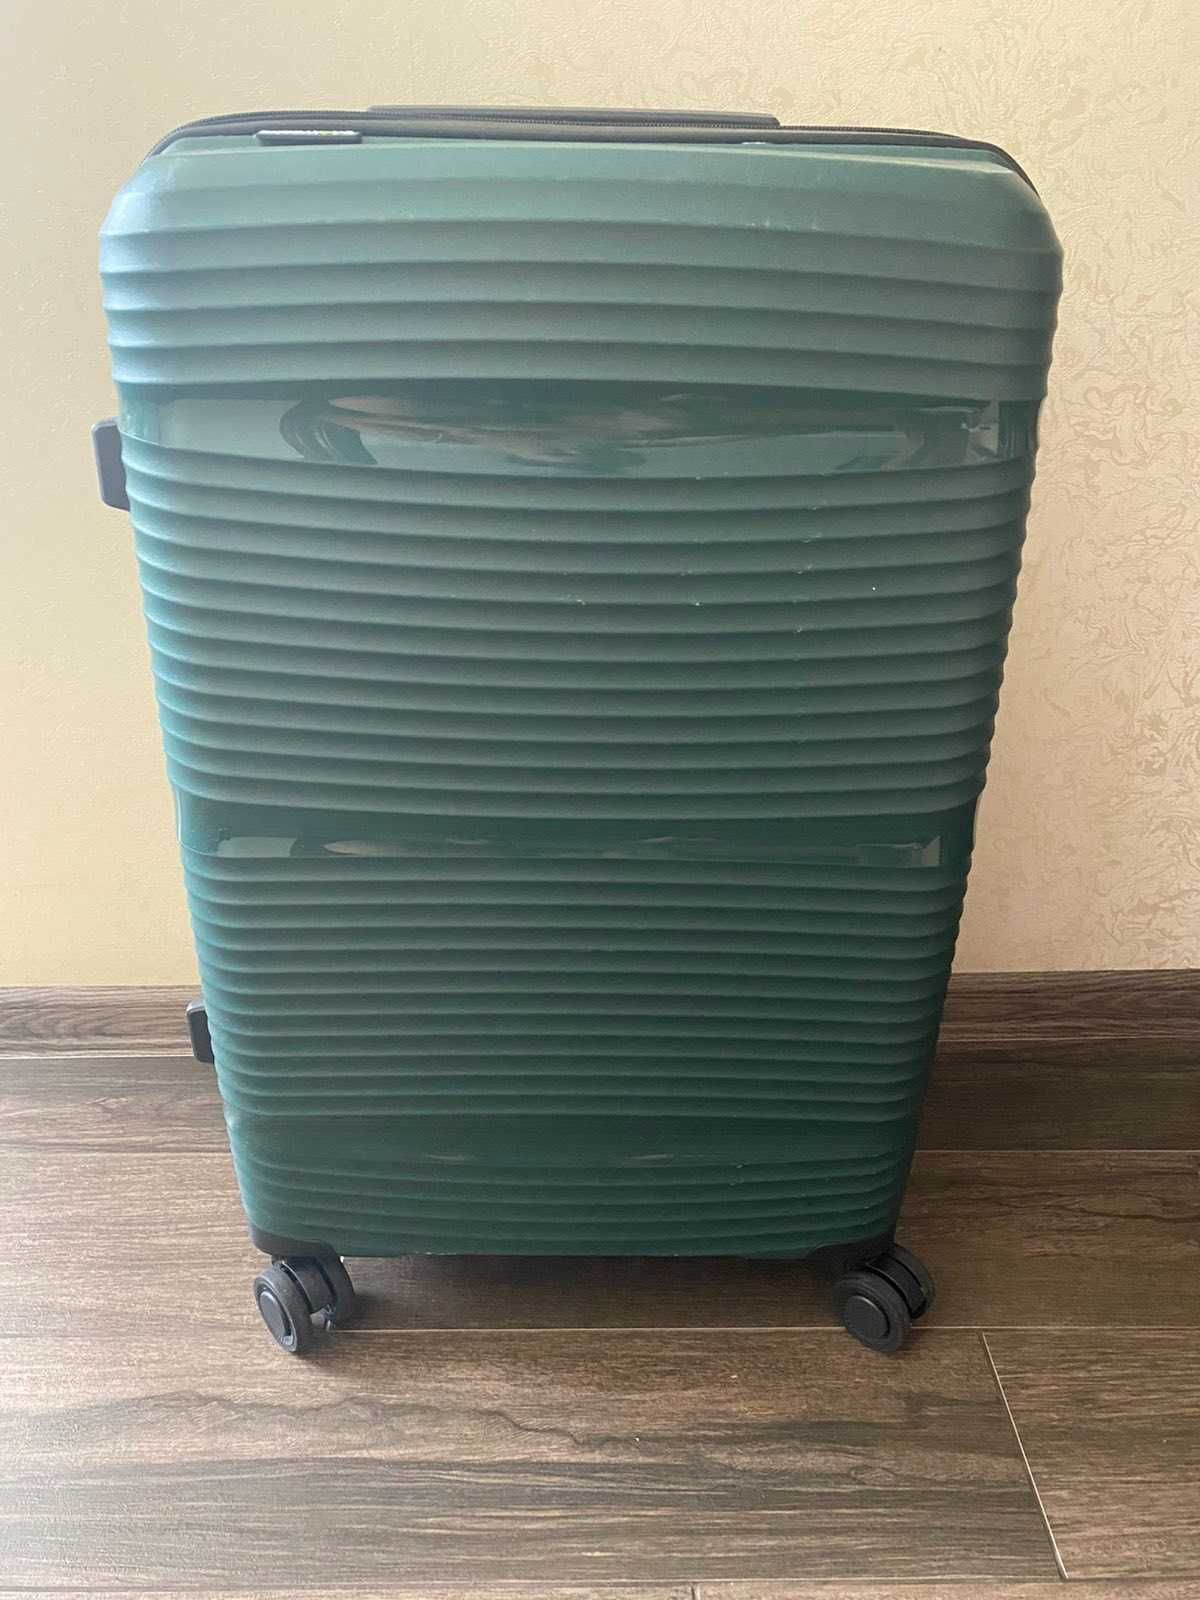 Продам чемодан 57х40 см (4 колеса) зеленого цвета